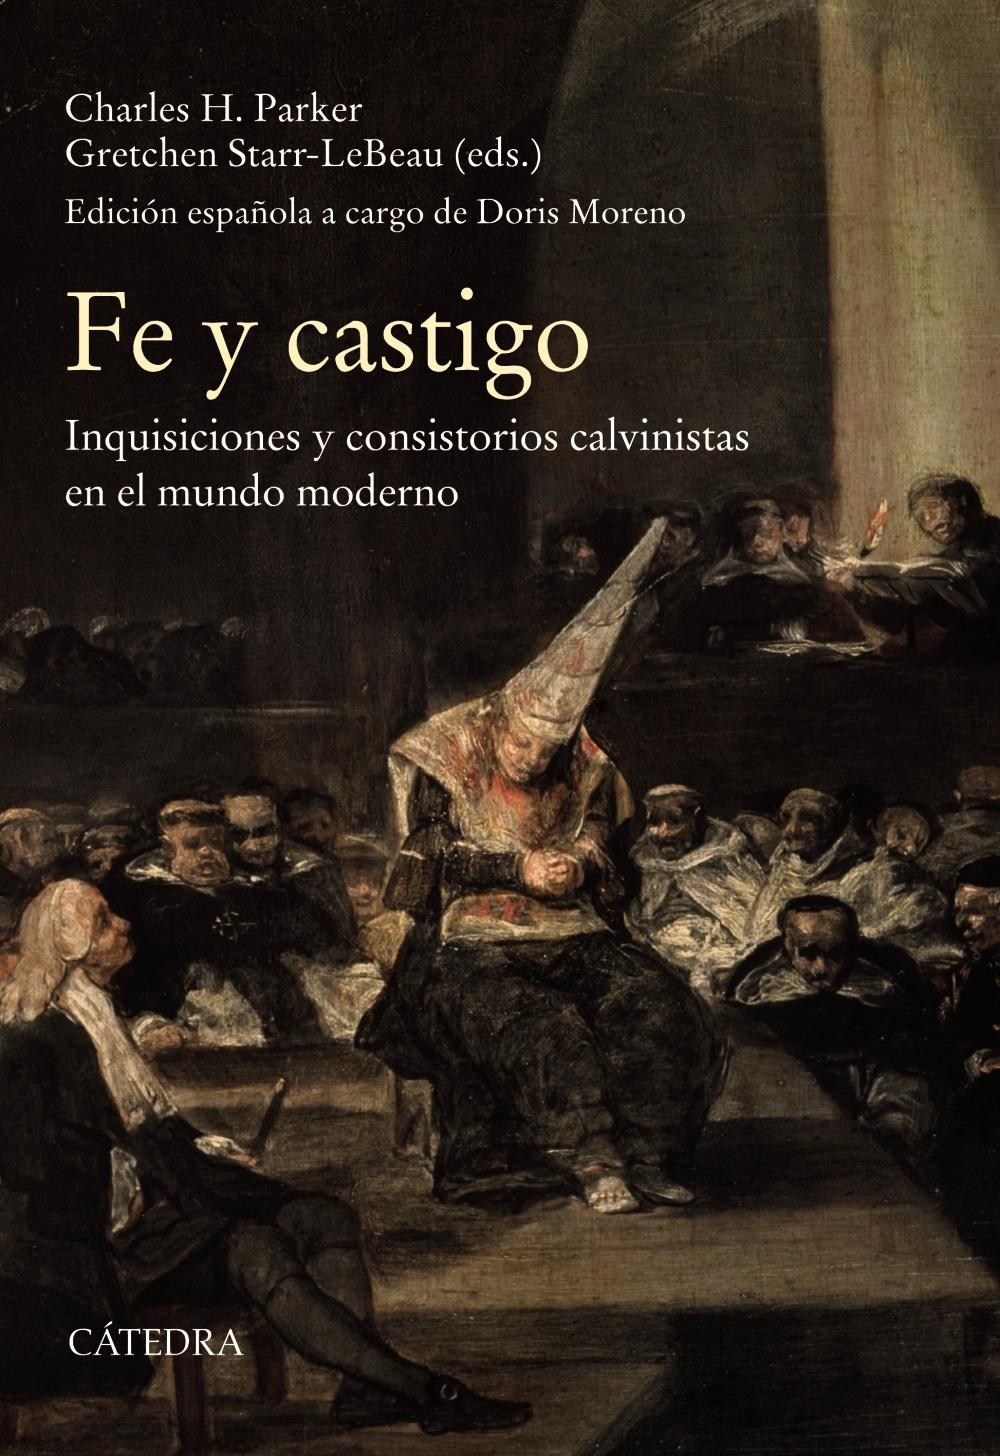 Fe y castigo "Inquisiciones y consistorios calvinistas en el mundo moderno". 